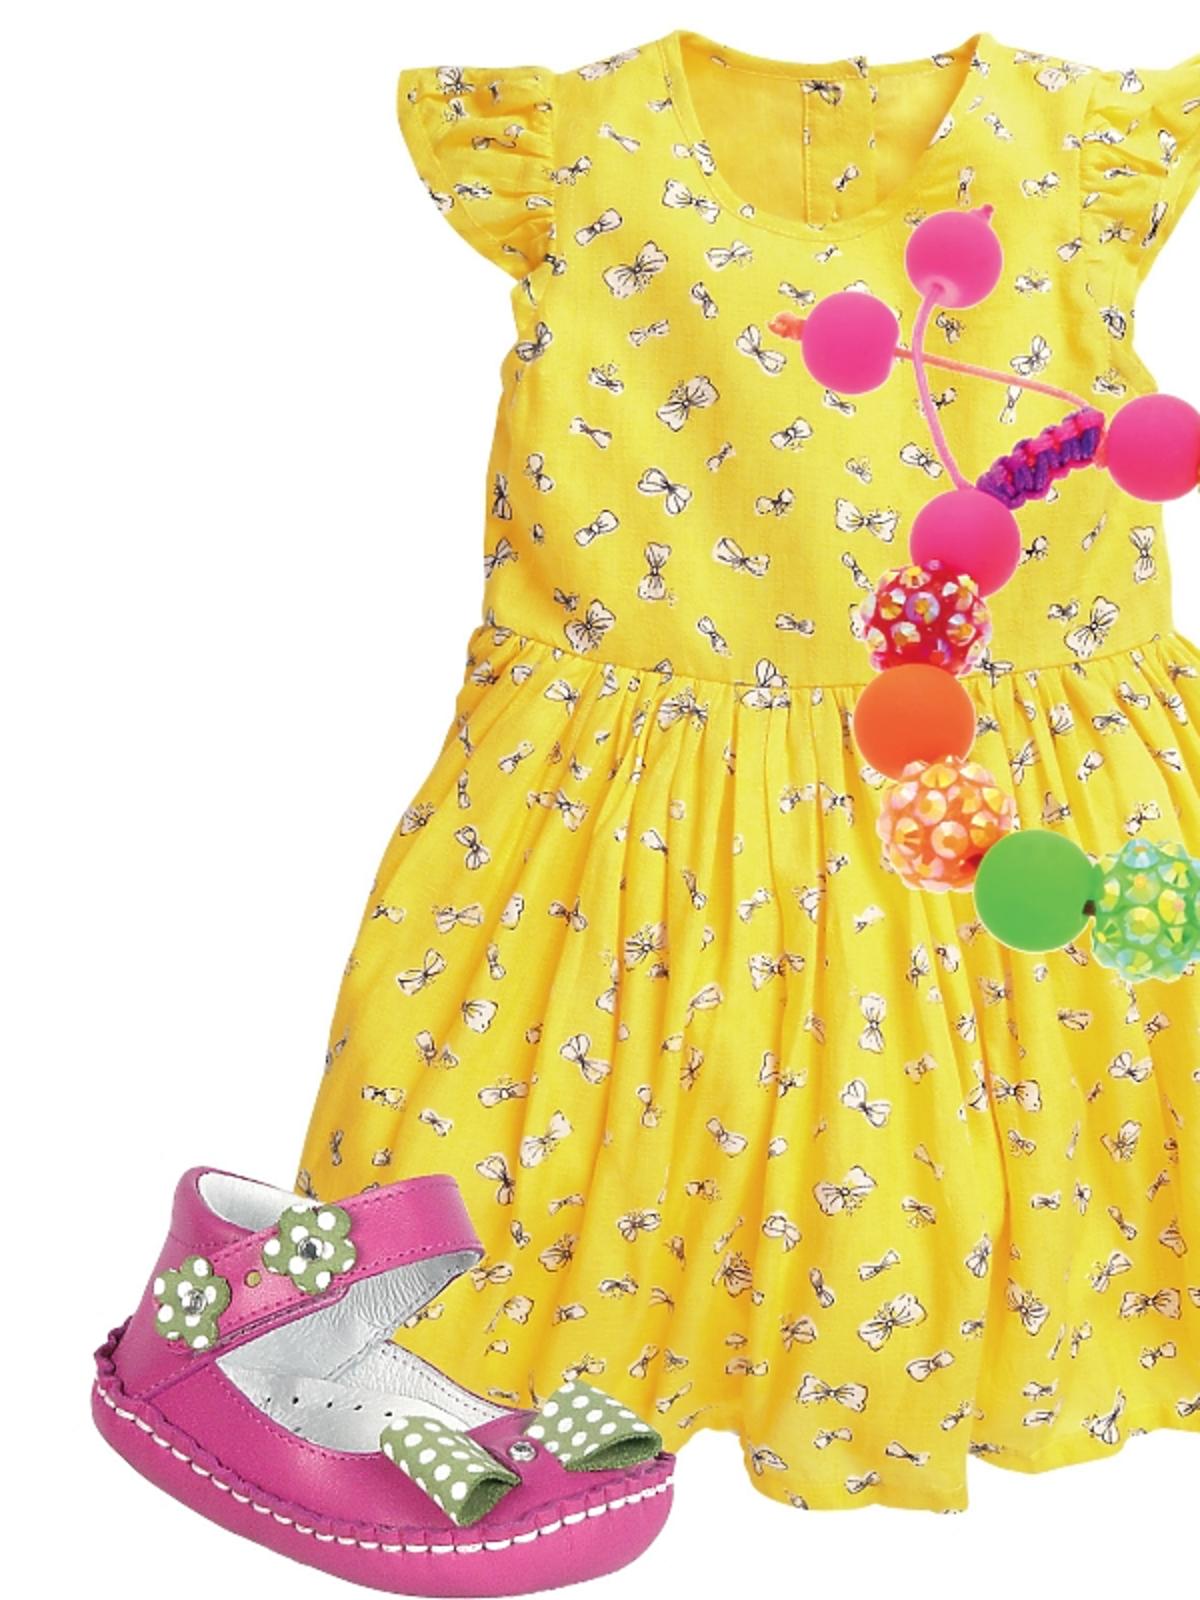 sukienka dla dziecka Next, bransoletka Smyk, buty dla dziewczynki Bartek – wiosna 2014